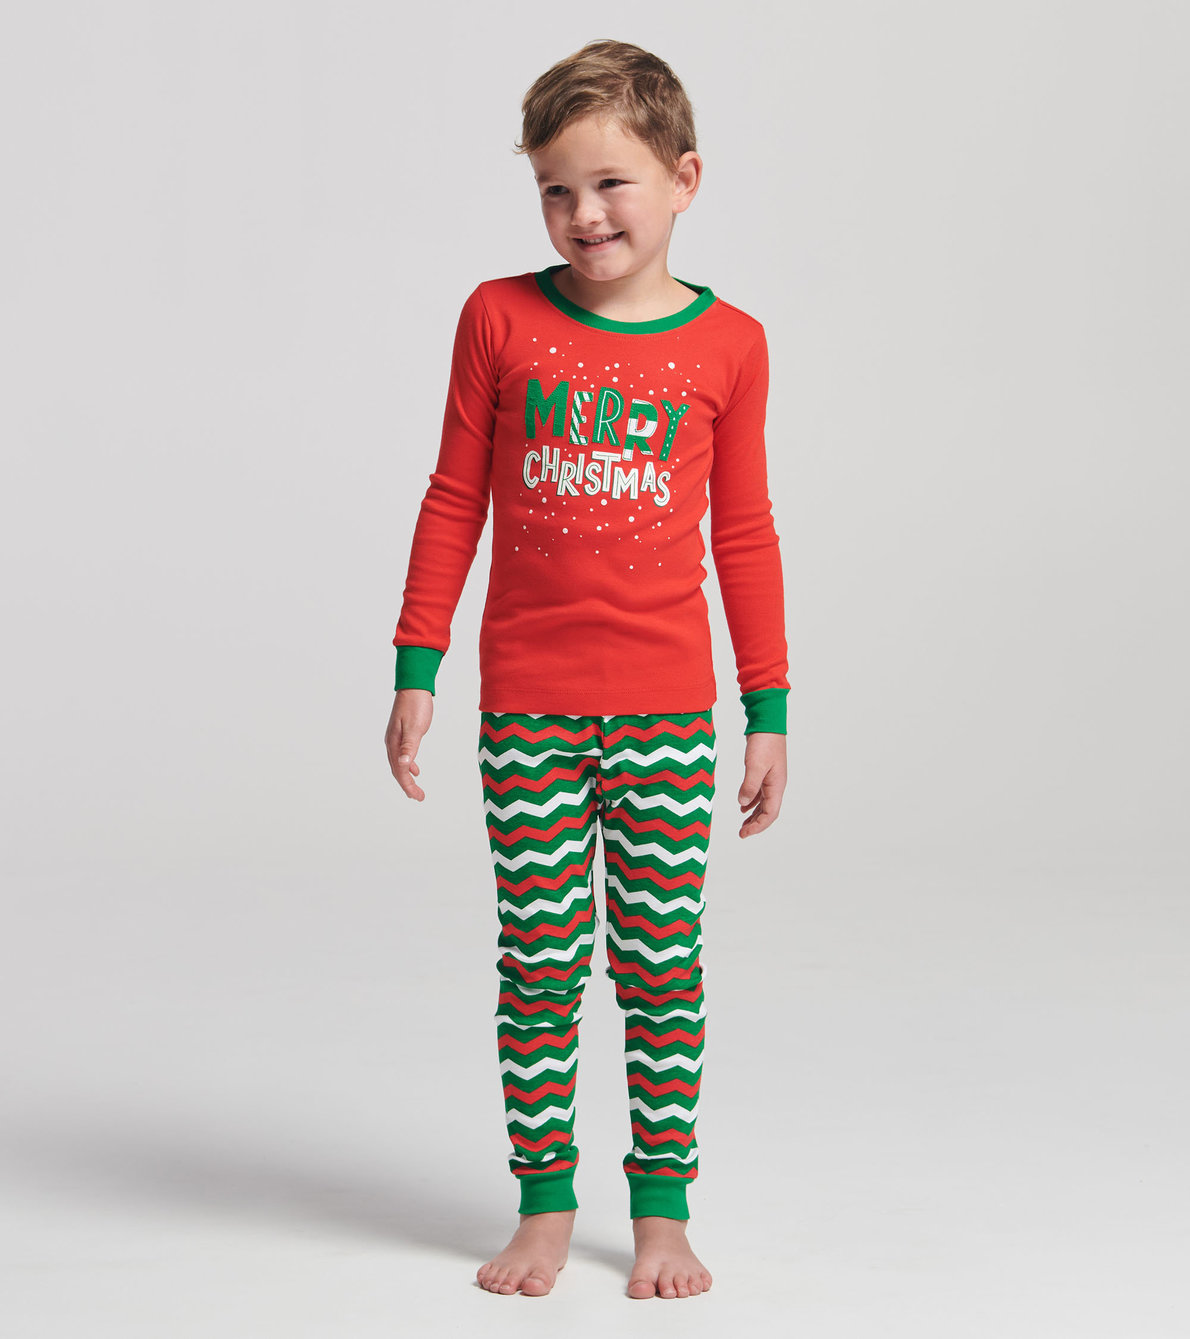 Agrandir l'image de Pyjama pour enfant – Motifs des fêtes « Merry Christmas »